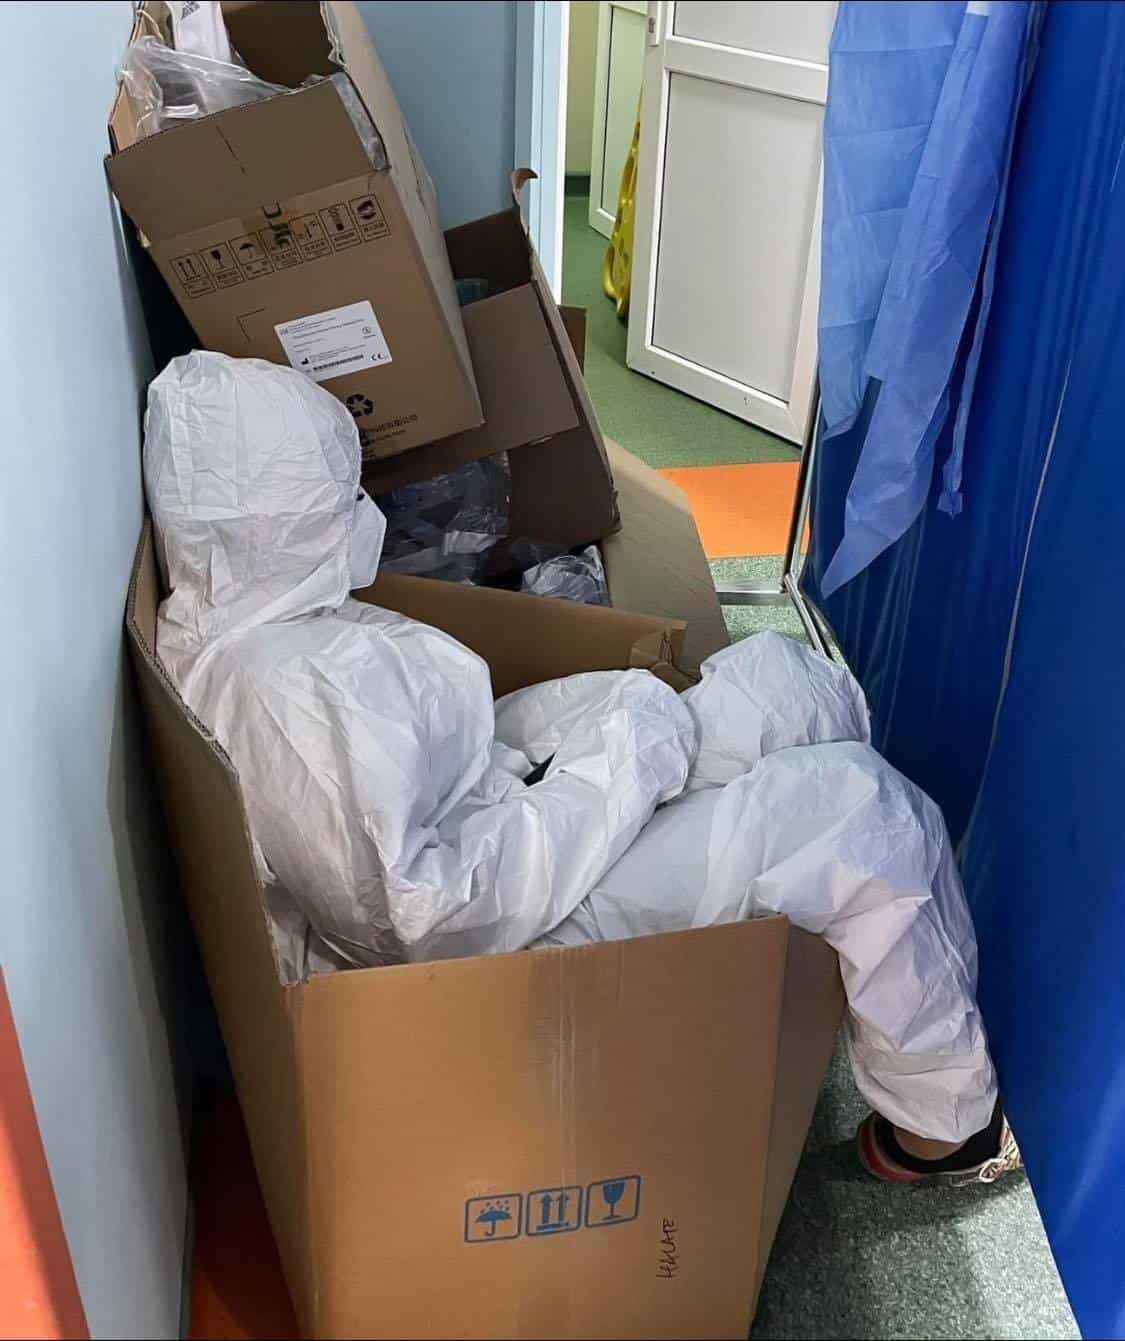 foto epuizată după lupta cu covidul, o asistentă se odihneşte într-o cutie de carton